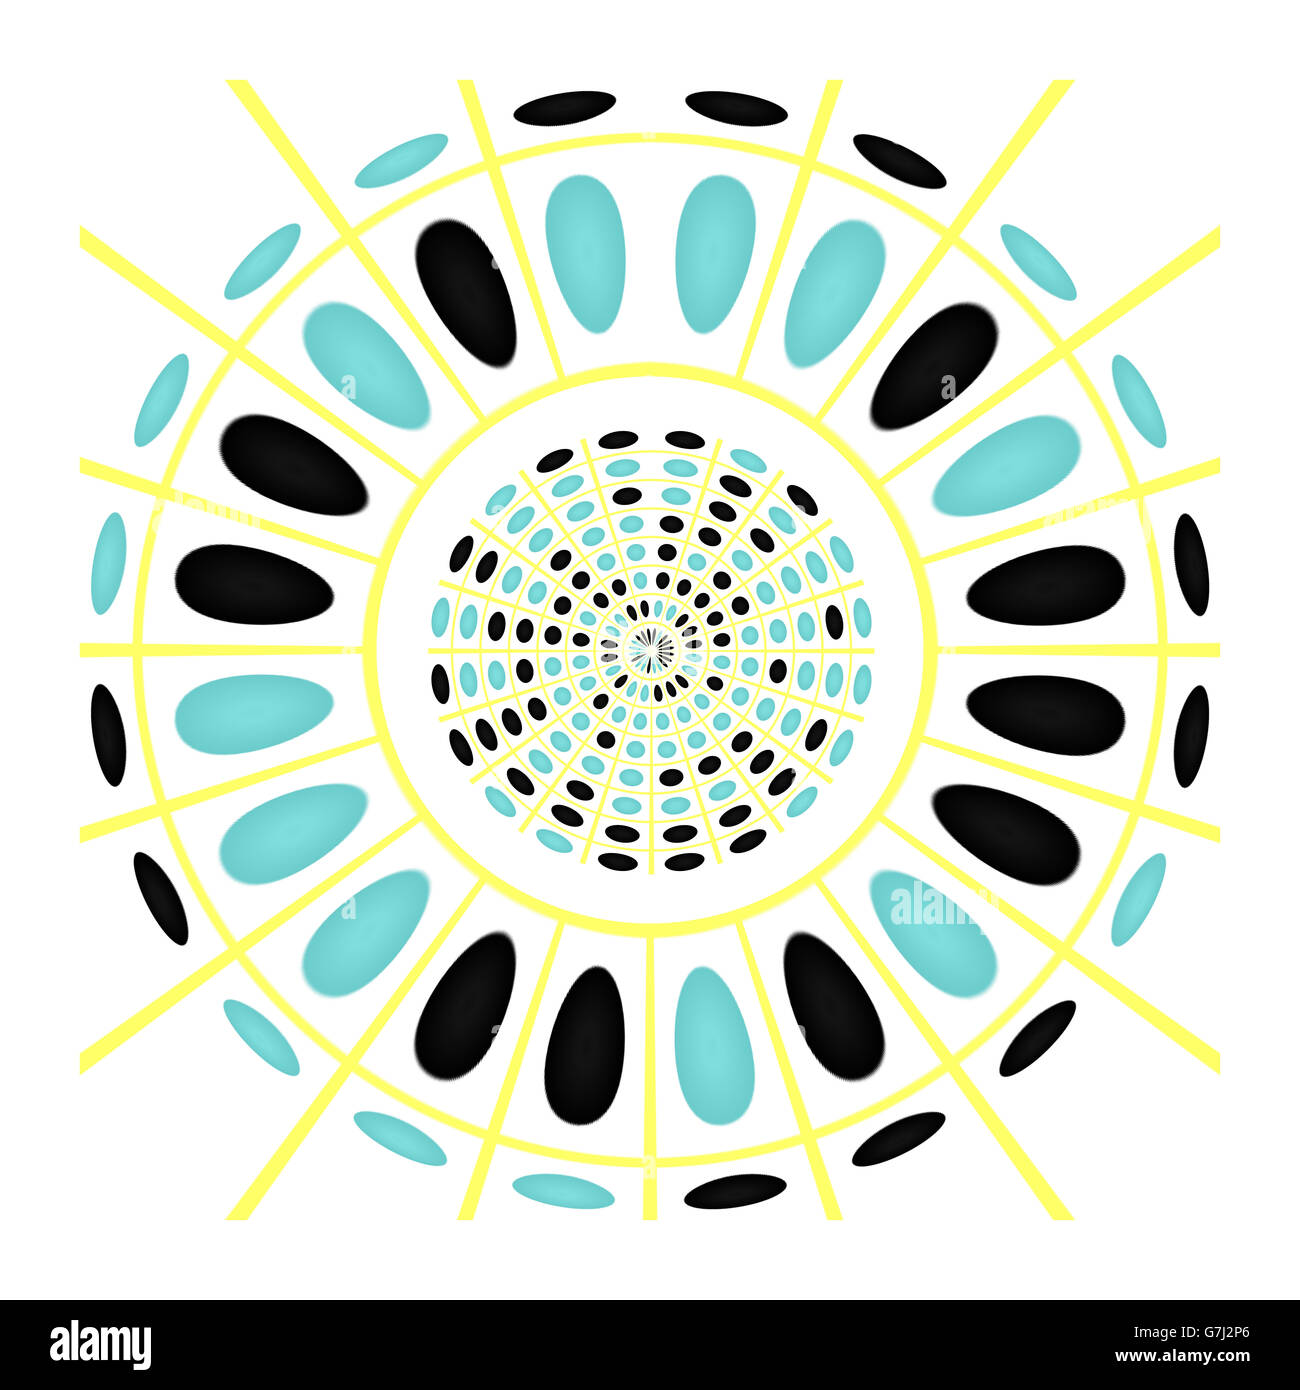 Circolare design geometrico in nero, ciano e giallo, su uno sfondo bianco. Arte digitale. Foto Stock